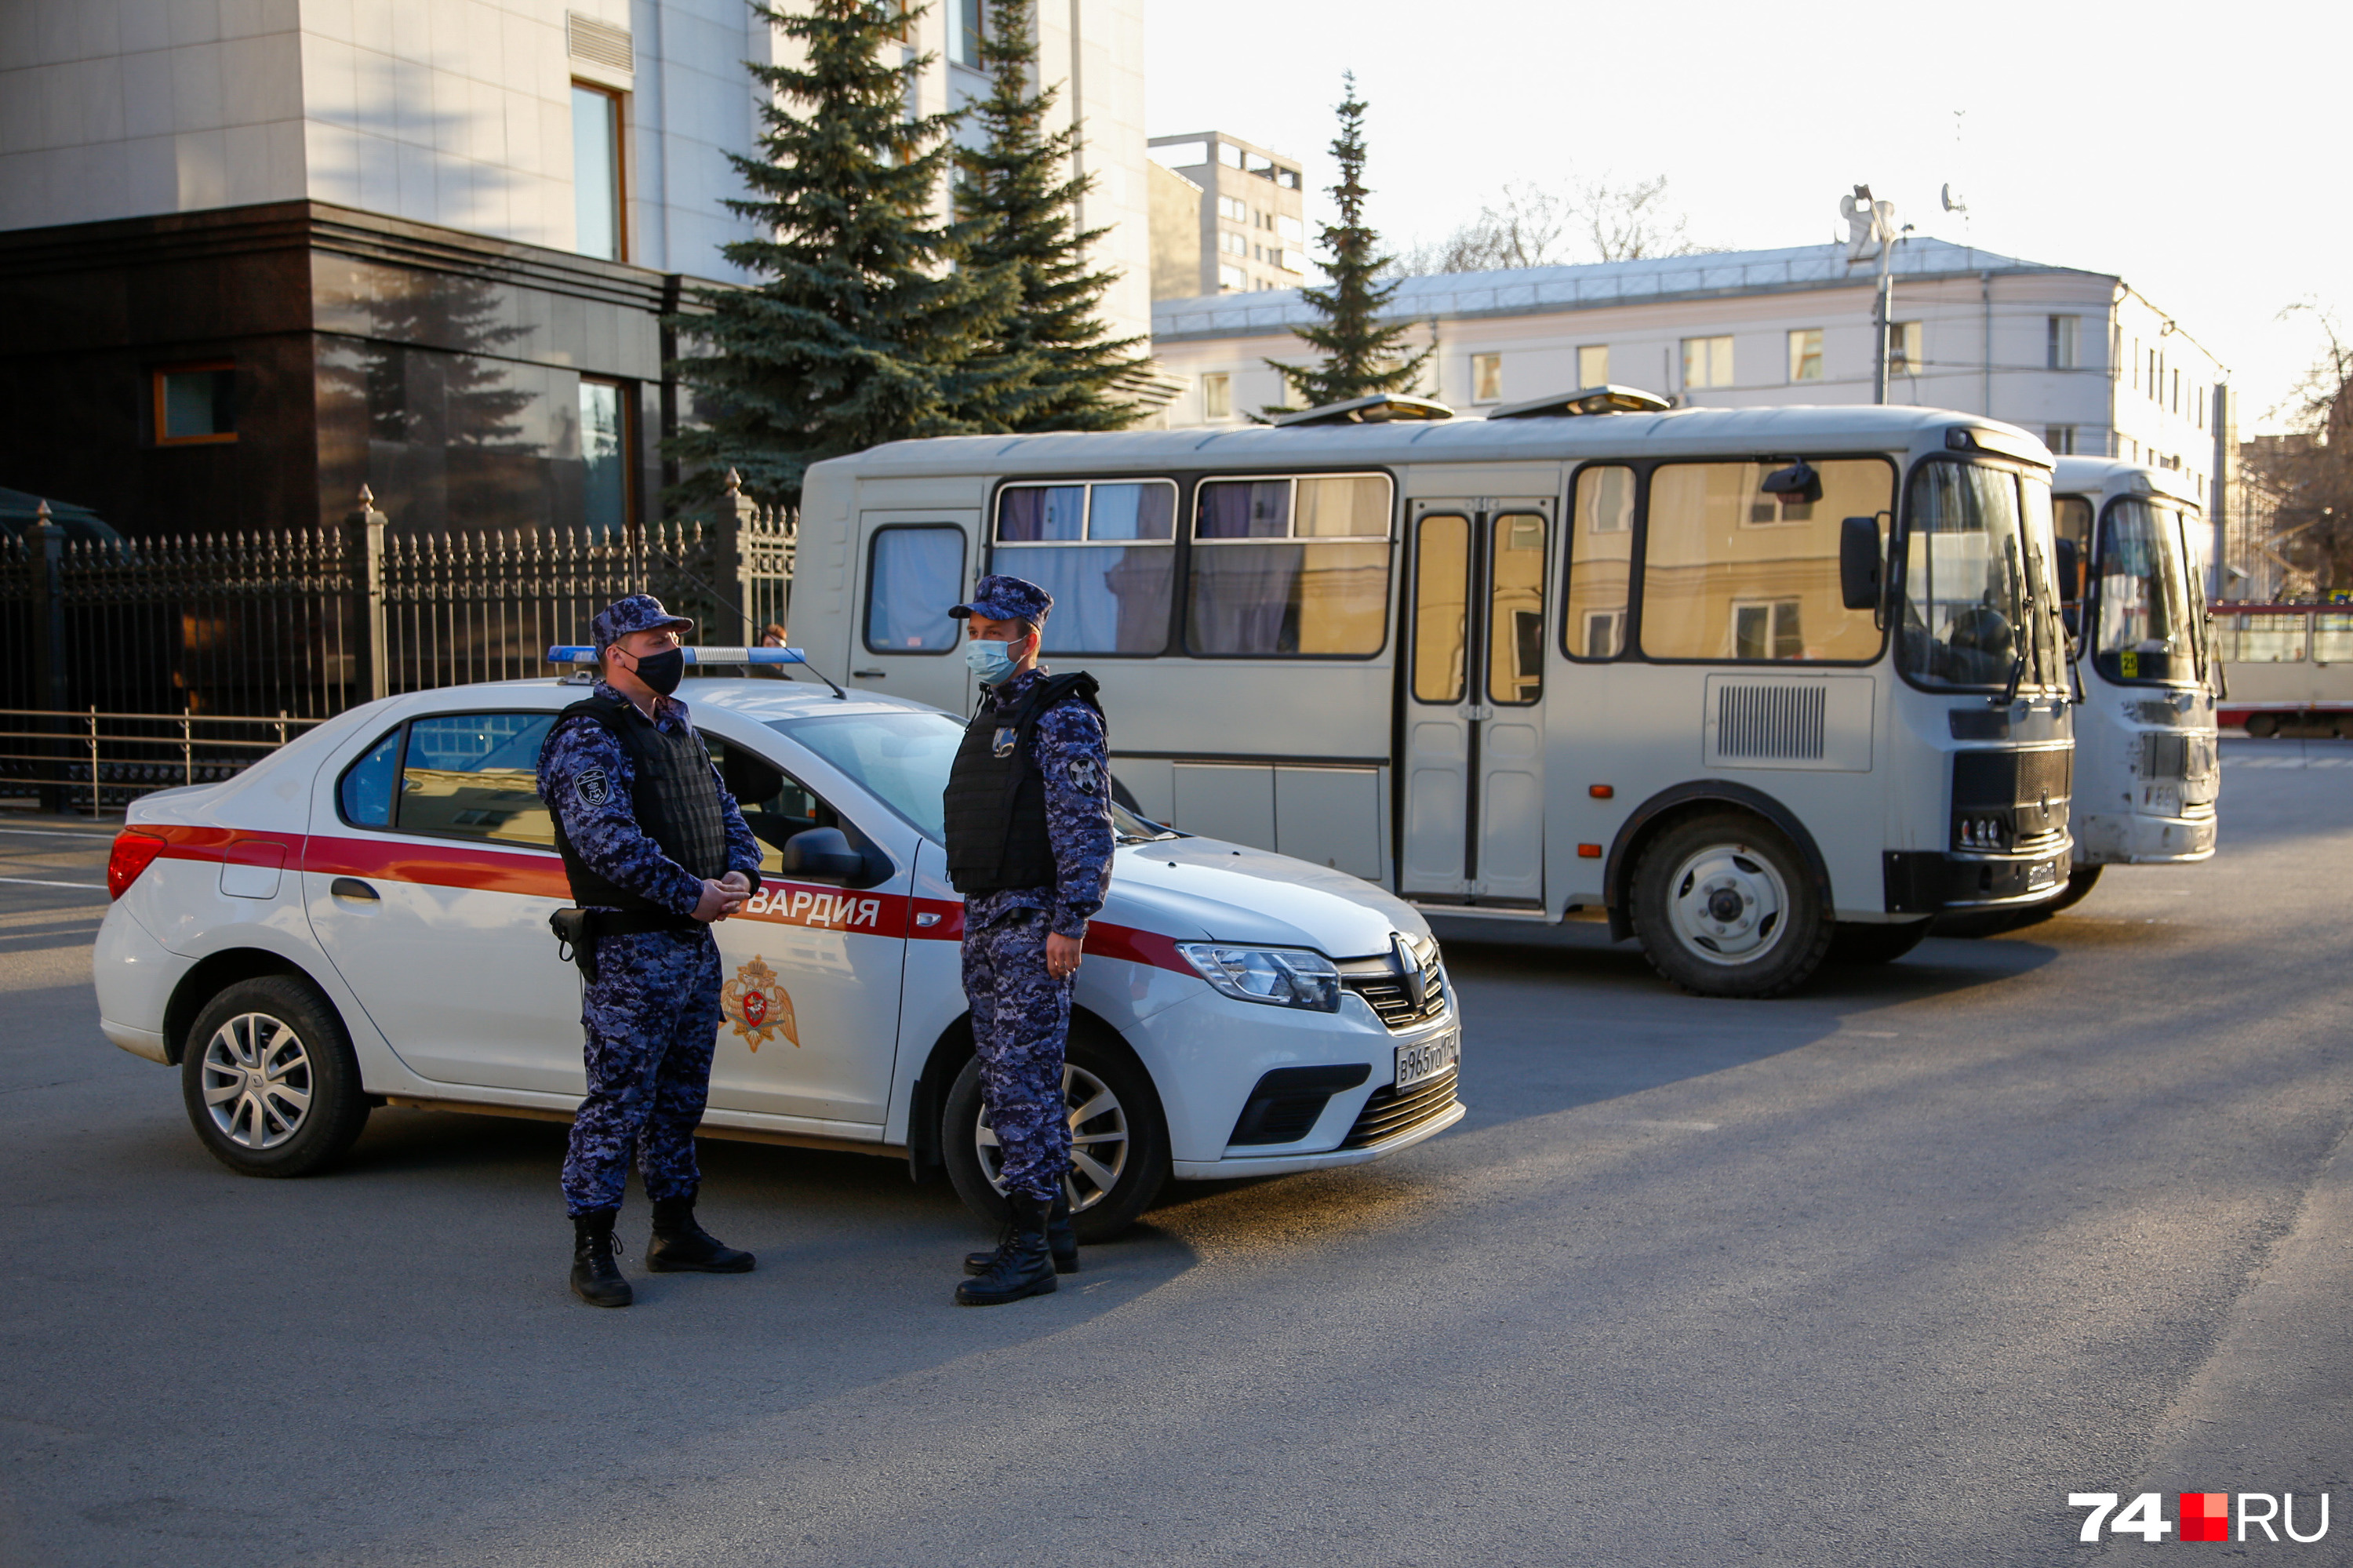 Кстати, старые маршрутки в качестве автотранспорта силовиков используют в Челябинске не первый раз